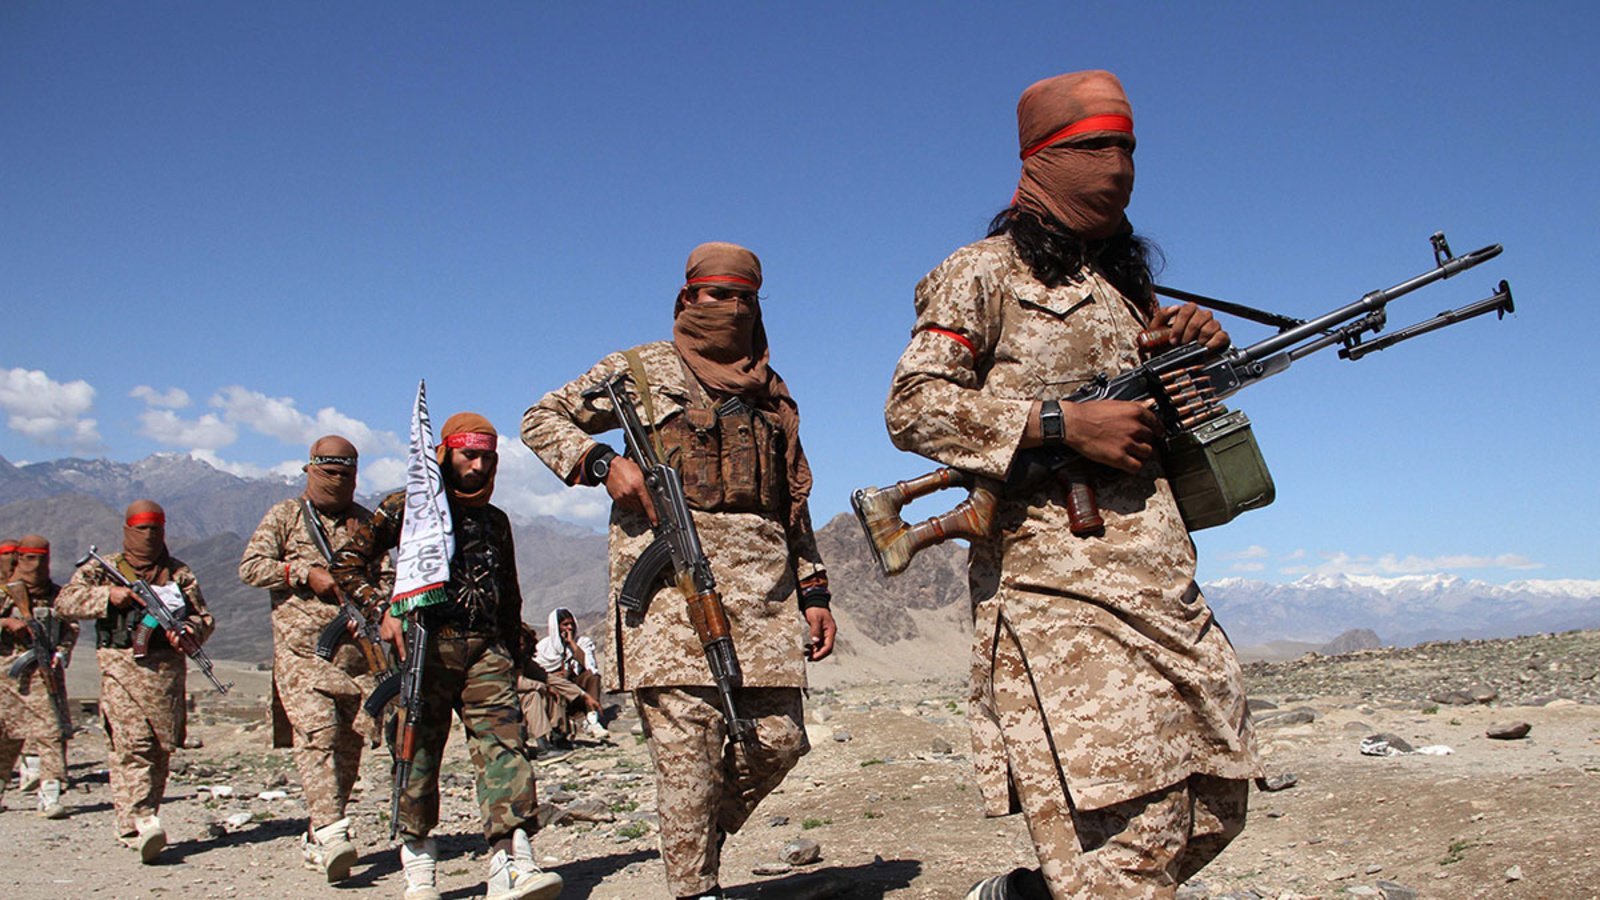 अफगानिस्तानमा नेटोका सुरक्षाकर्मीहरुले गरेको सुरक्षा कारबाहीमा १५ जना तालिबान लडाकू मारिए